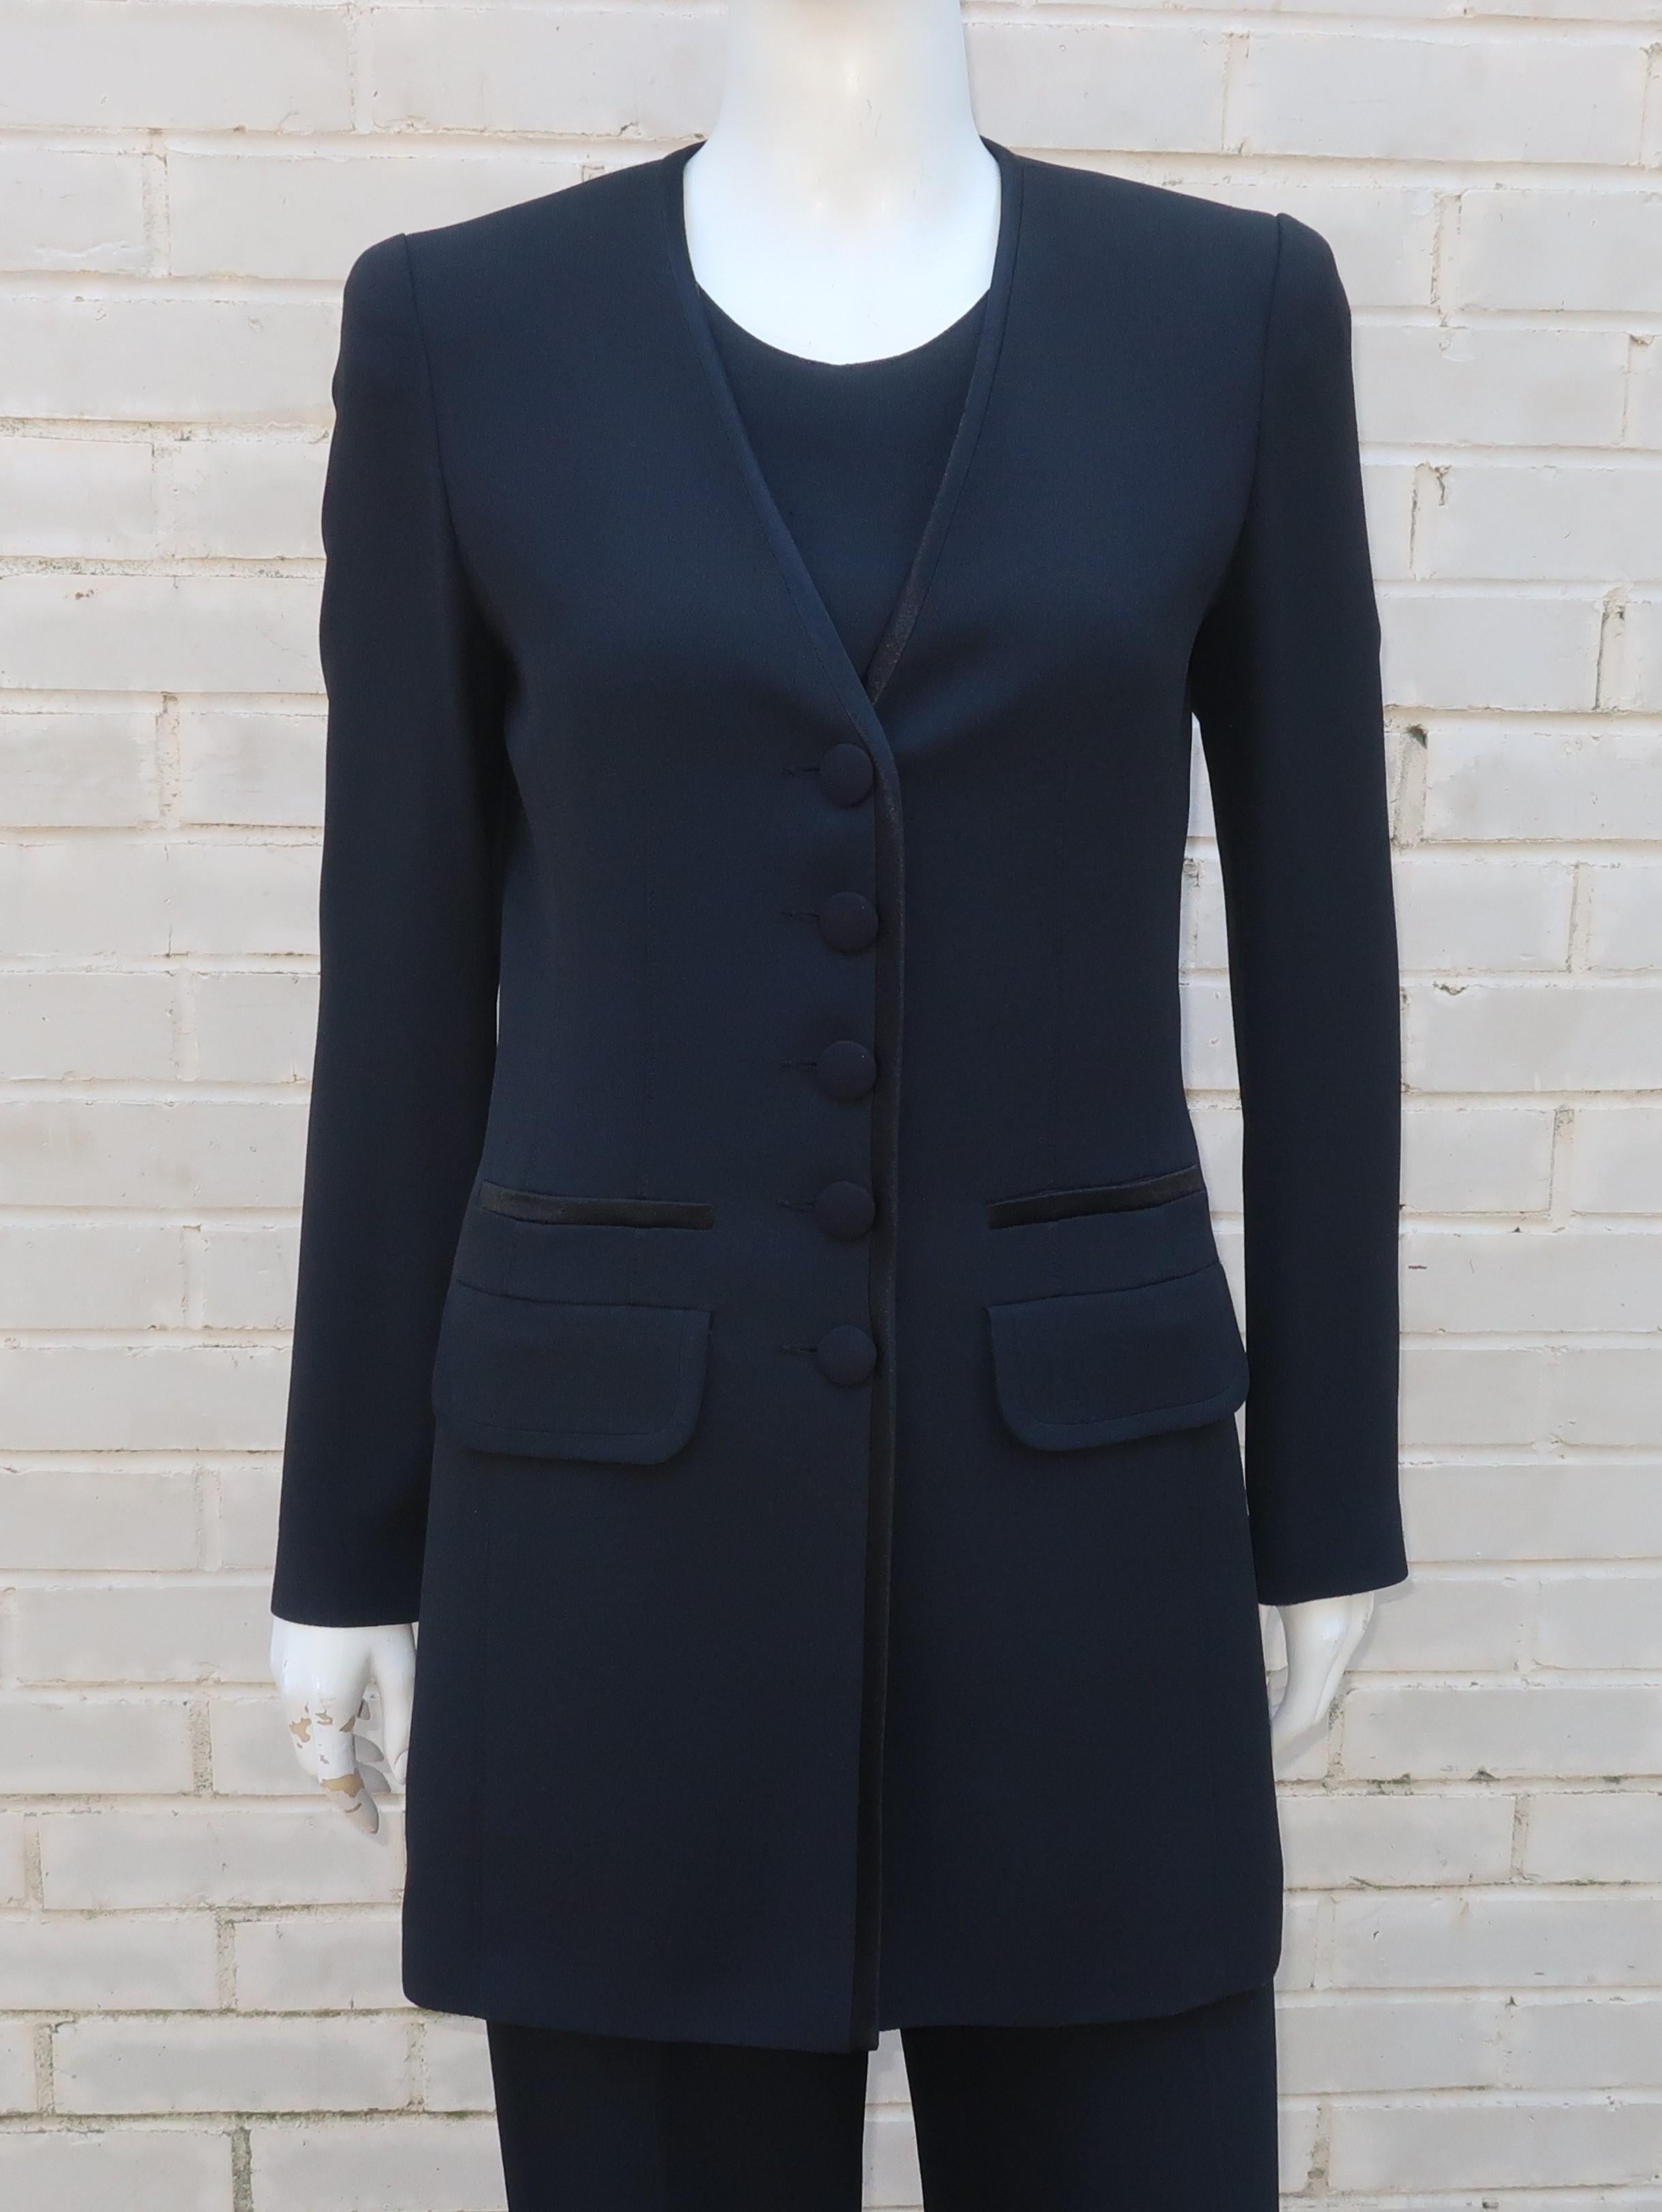 Ein vielseitiger dreiteiliger Anzug von Sonia Rykiel aus den 1980er Jahren aus einem schwarzen Rayon/Acetat-Gemisch, bestehend aus Jacke, Oberteil und Hose.  Die schicken Details, darunter ein Satin-Finish an der kragenlosen Jacke, verleihen dem